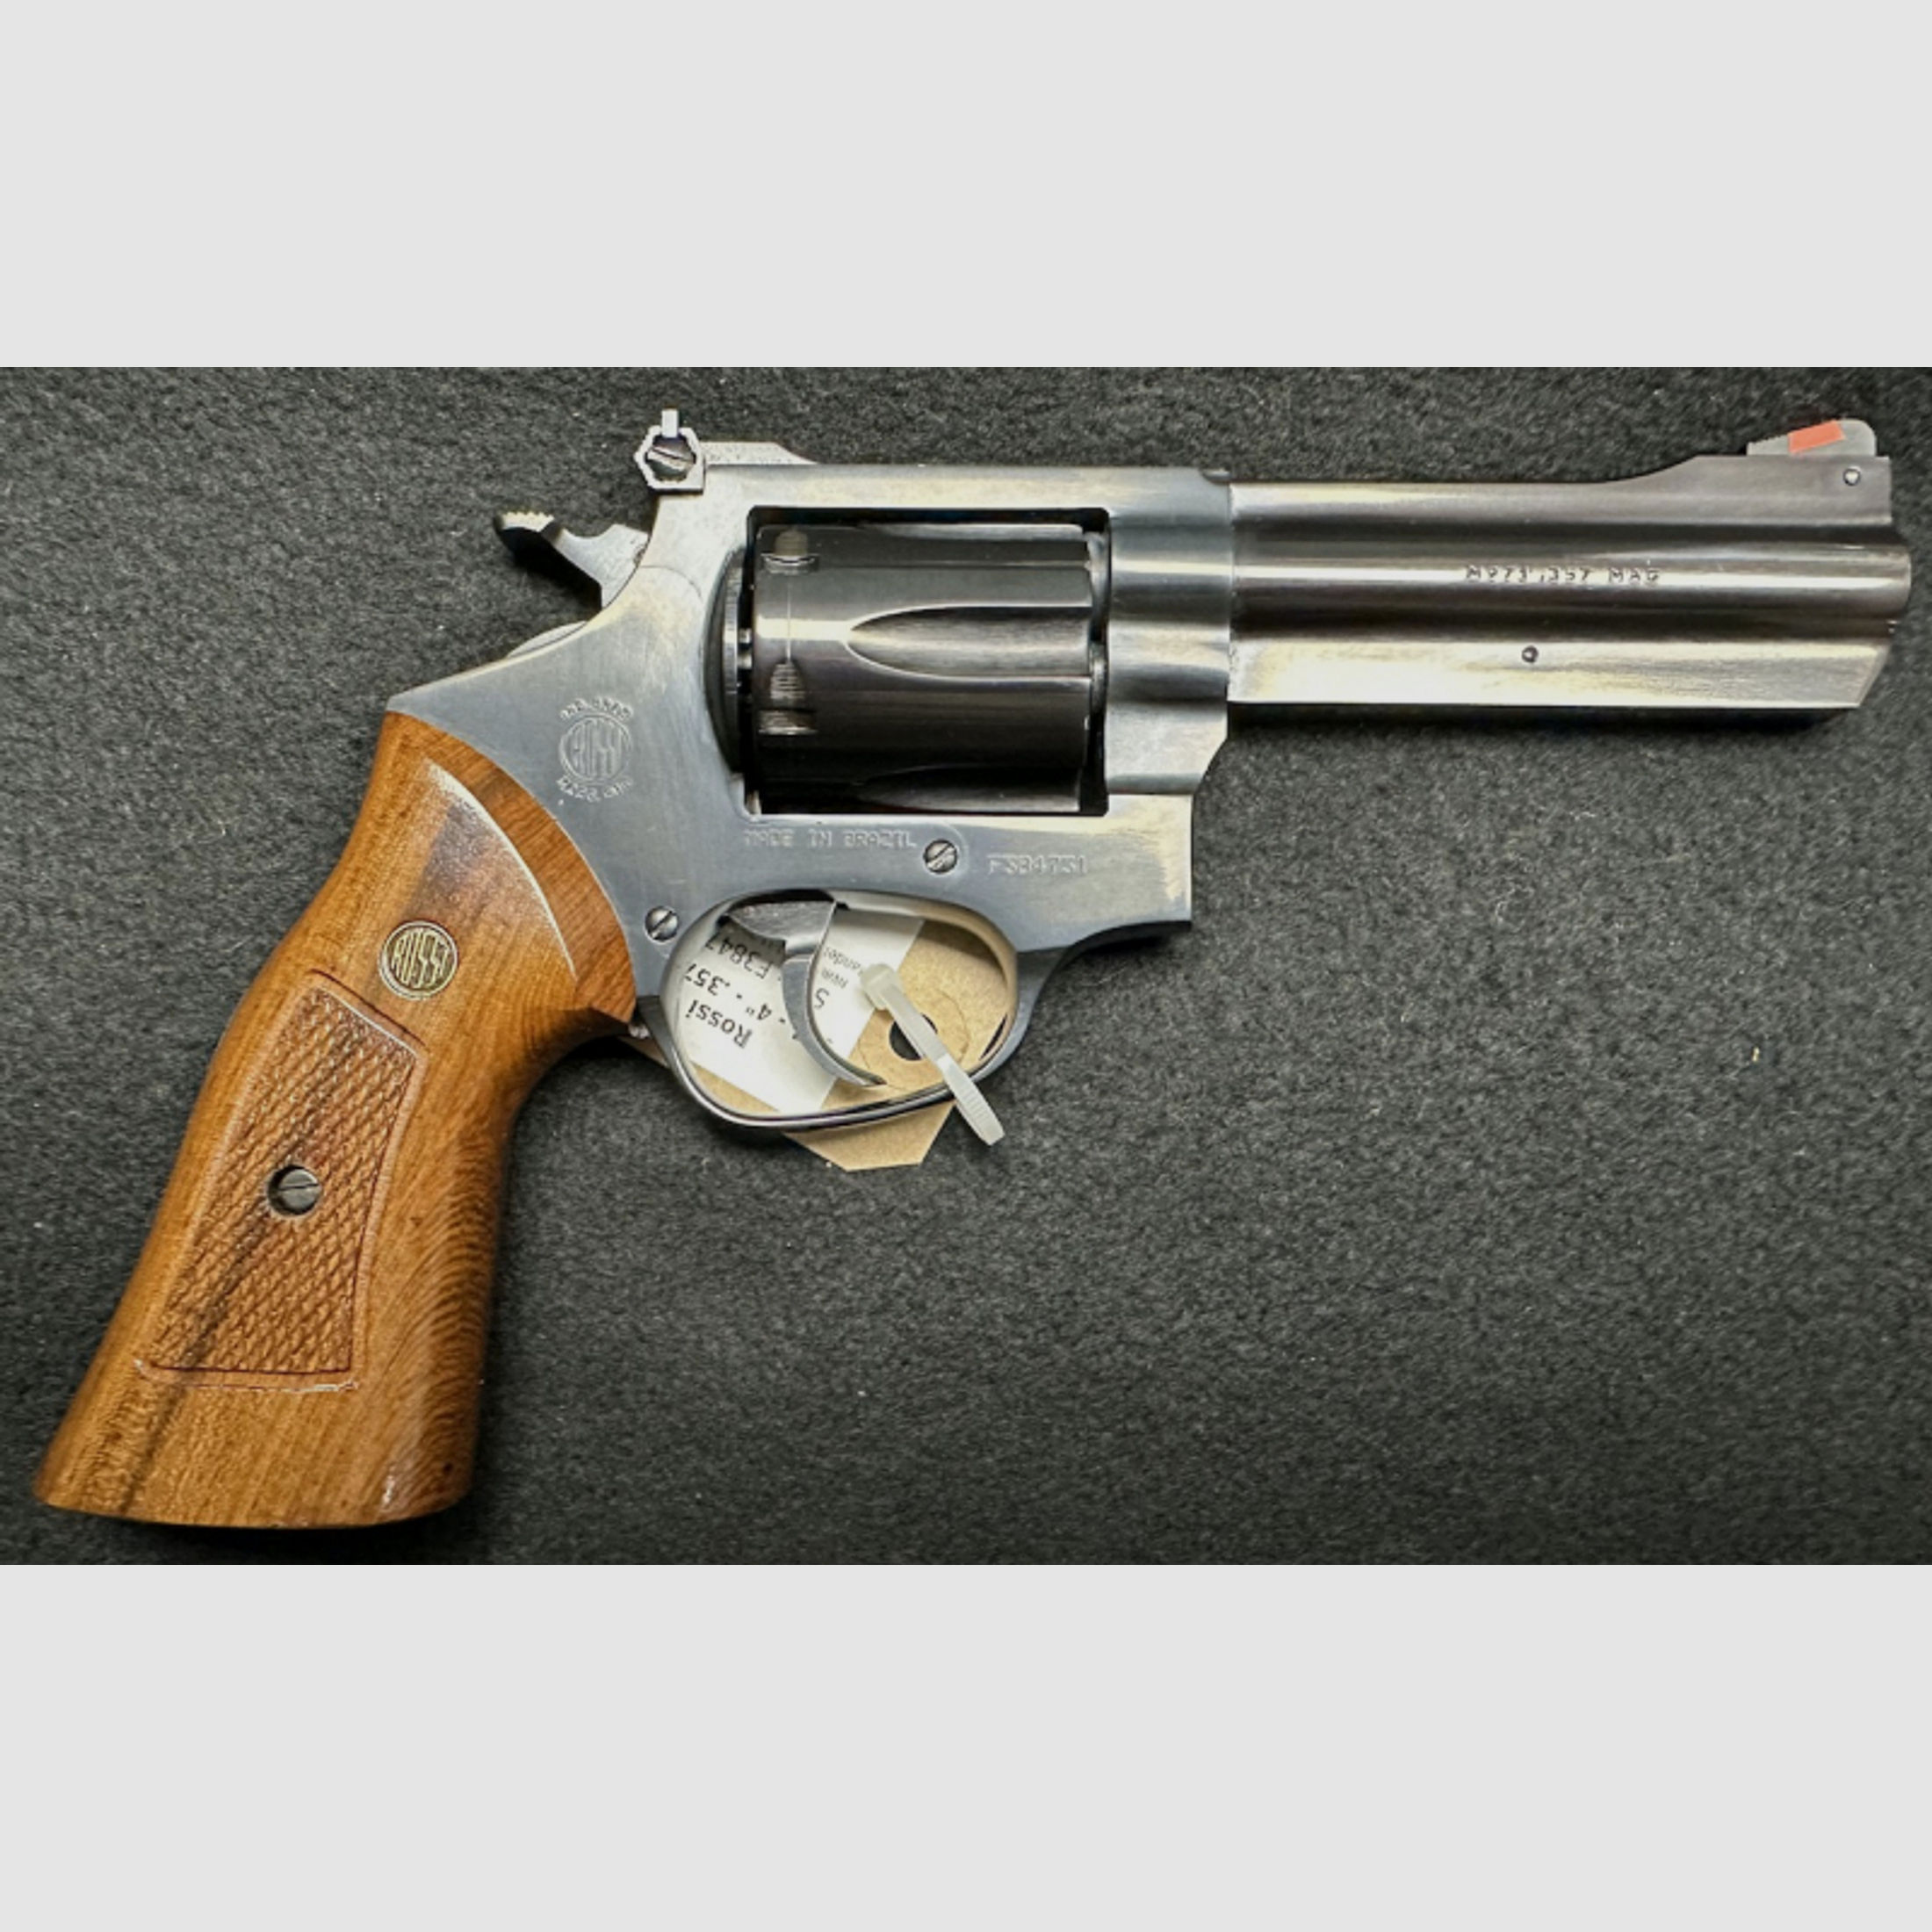 Sportrevolver Revolver ROSSI .357 Magnum - 4 - M 971 kein Smith & Wesson - kein COLT